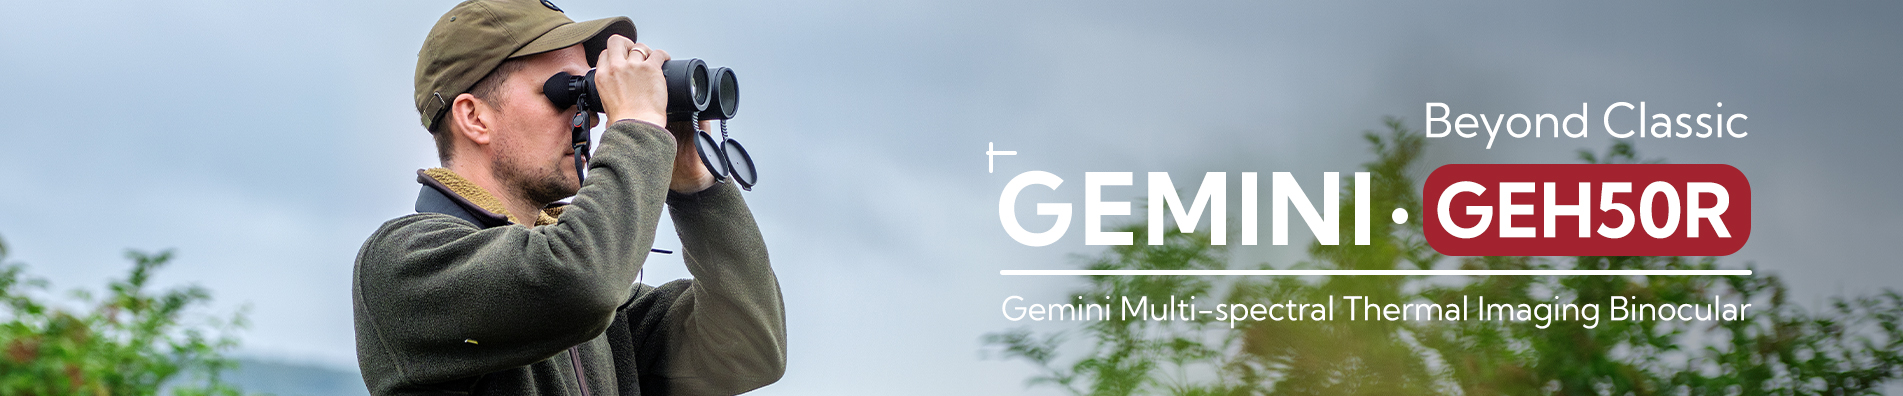 Wärmebild-Binokular Gemini-Serie GEH50R